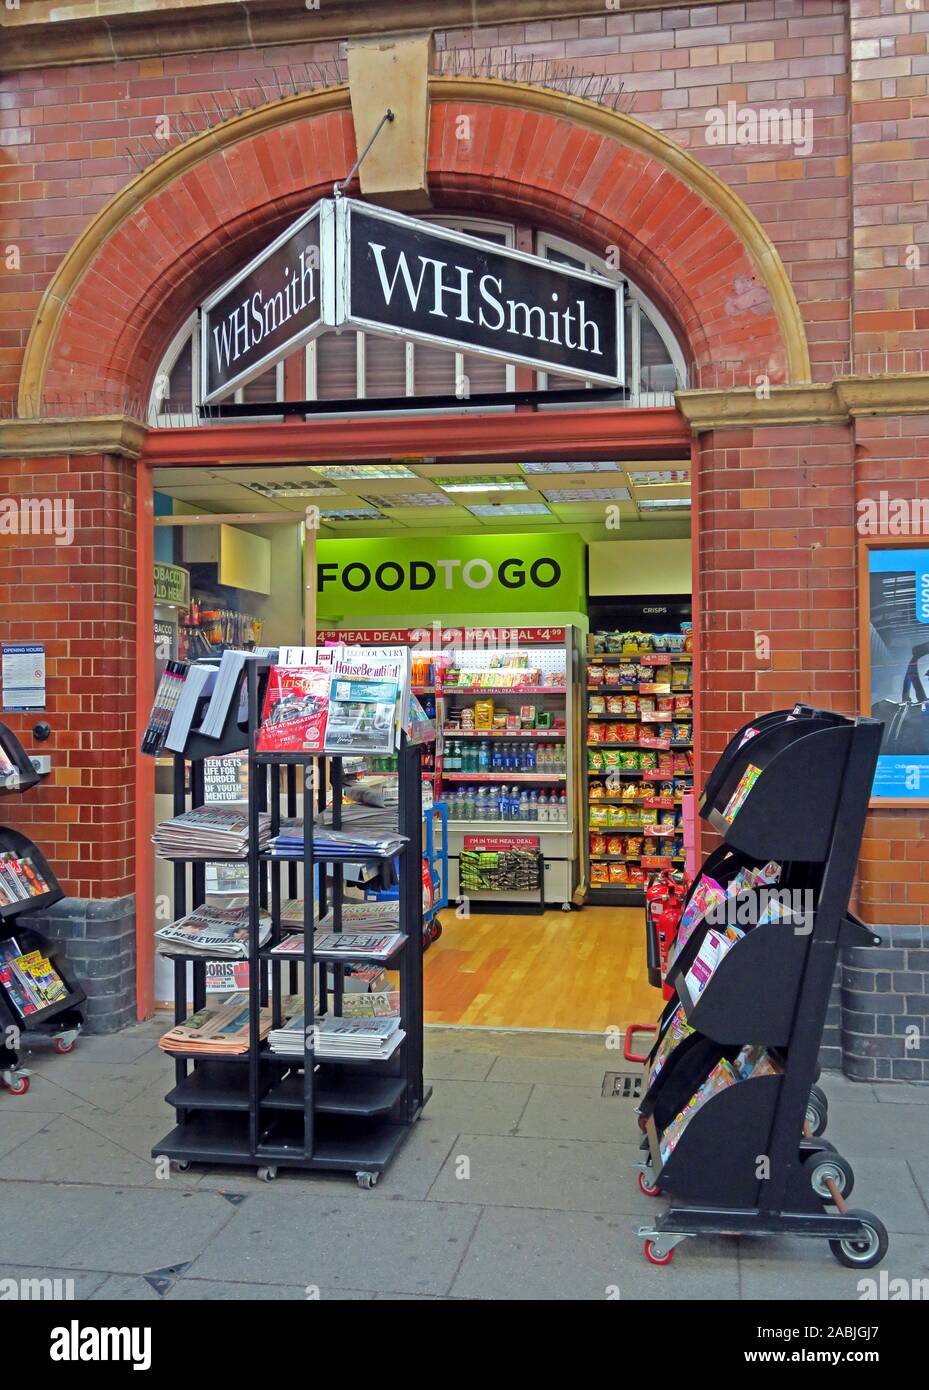 WH Smith, magasin de journaux, unité de vente au détail, Food to Go, Station de rue Moor, Queensway, Birmingham, West Midlands, Angleterre, Royaume-Uni, B4 7UL Banque D'Images